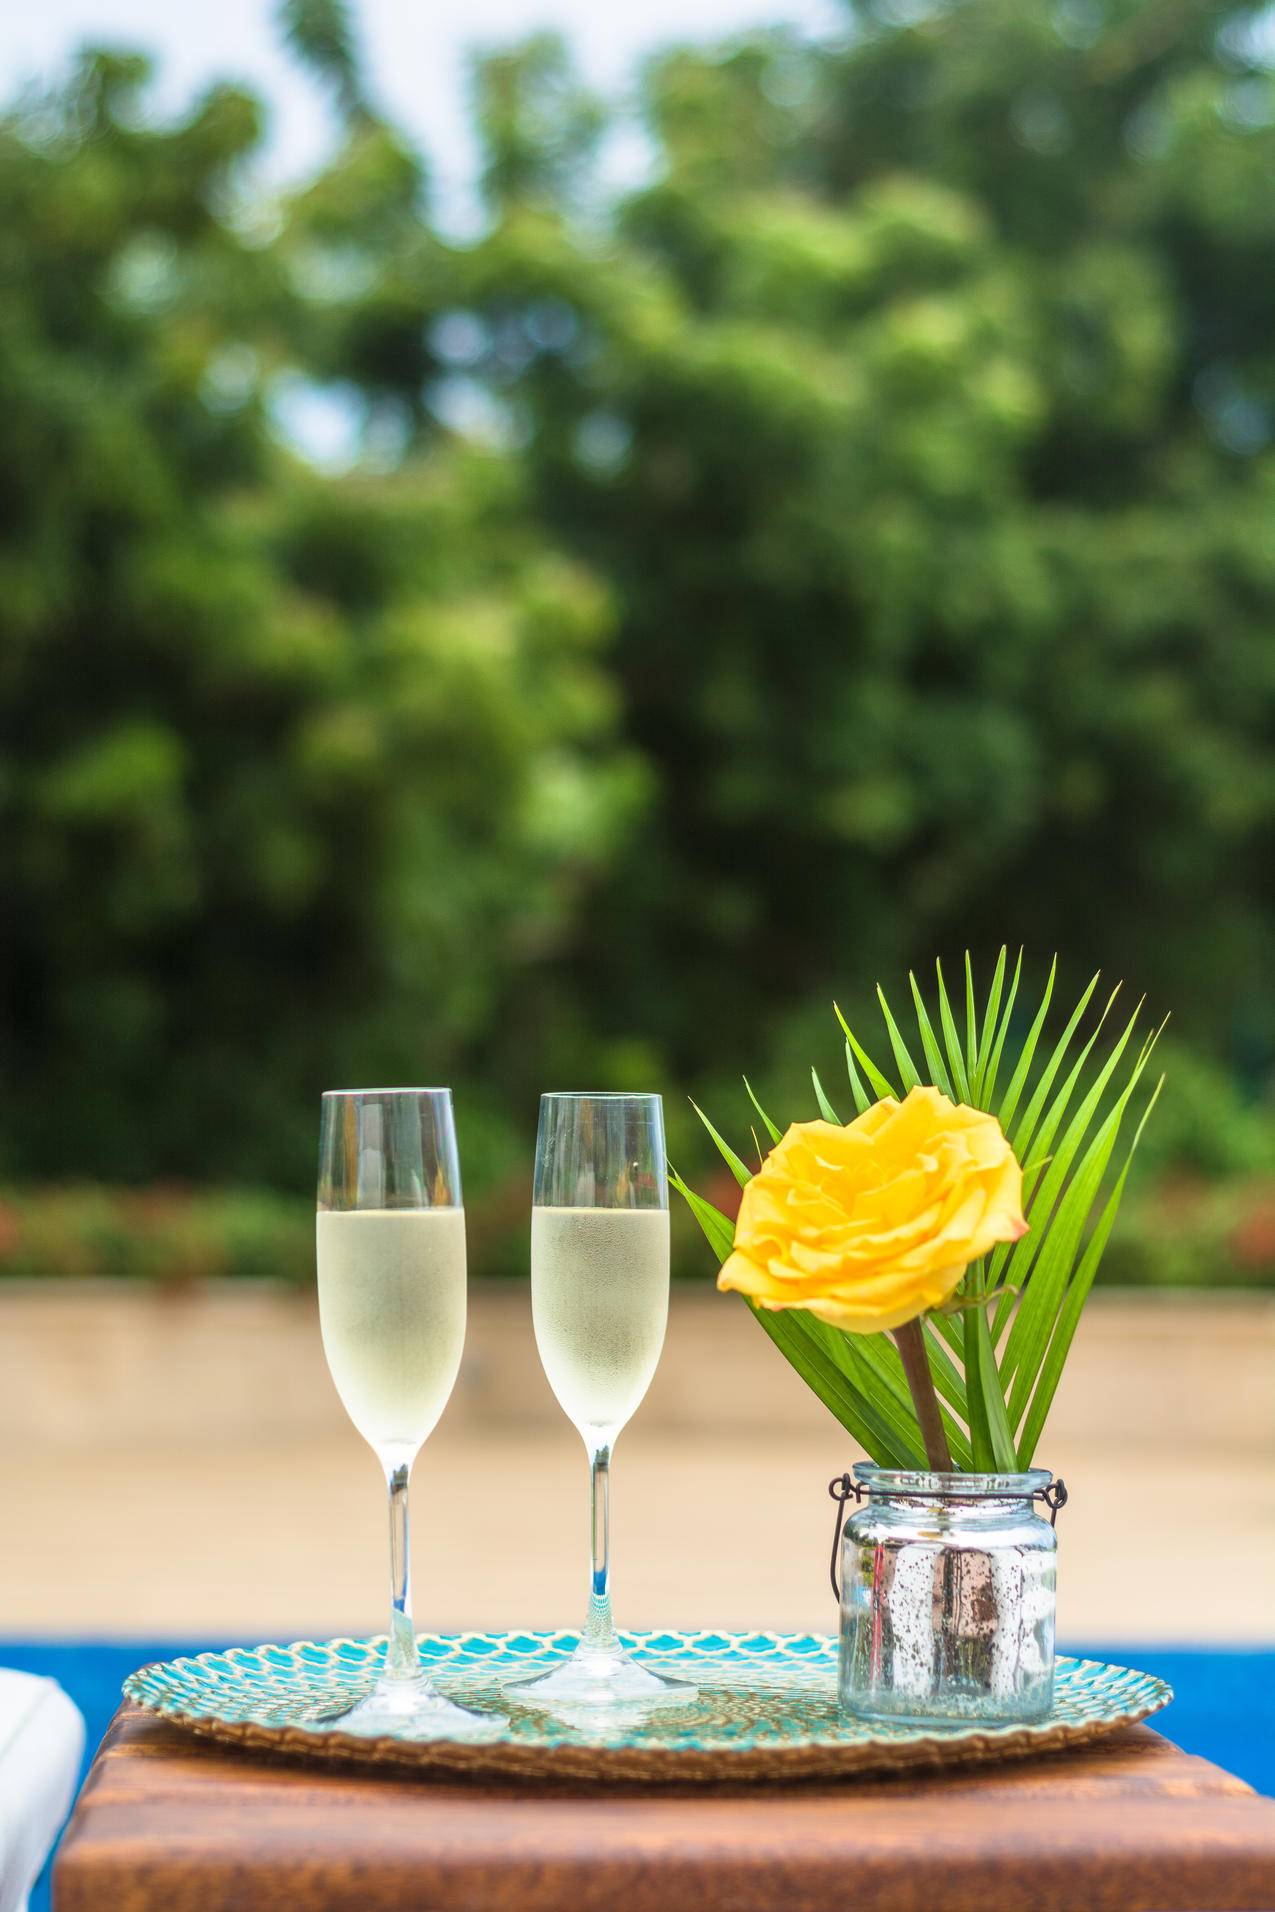 黄色玫瑰花中心和两个清澈的香槟长笛